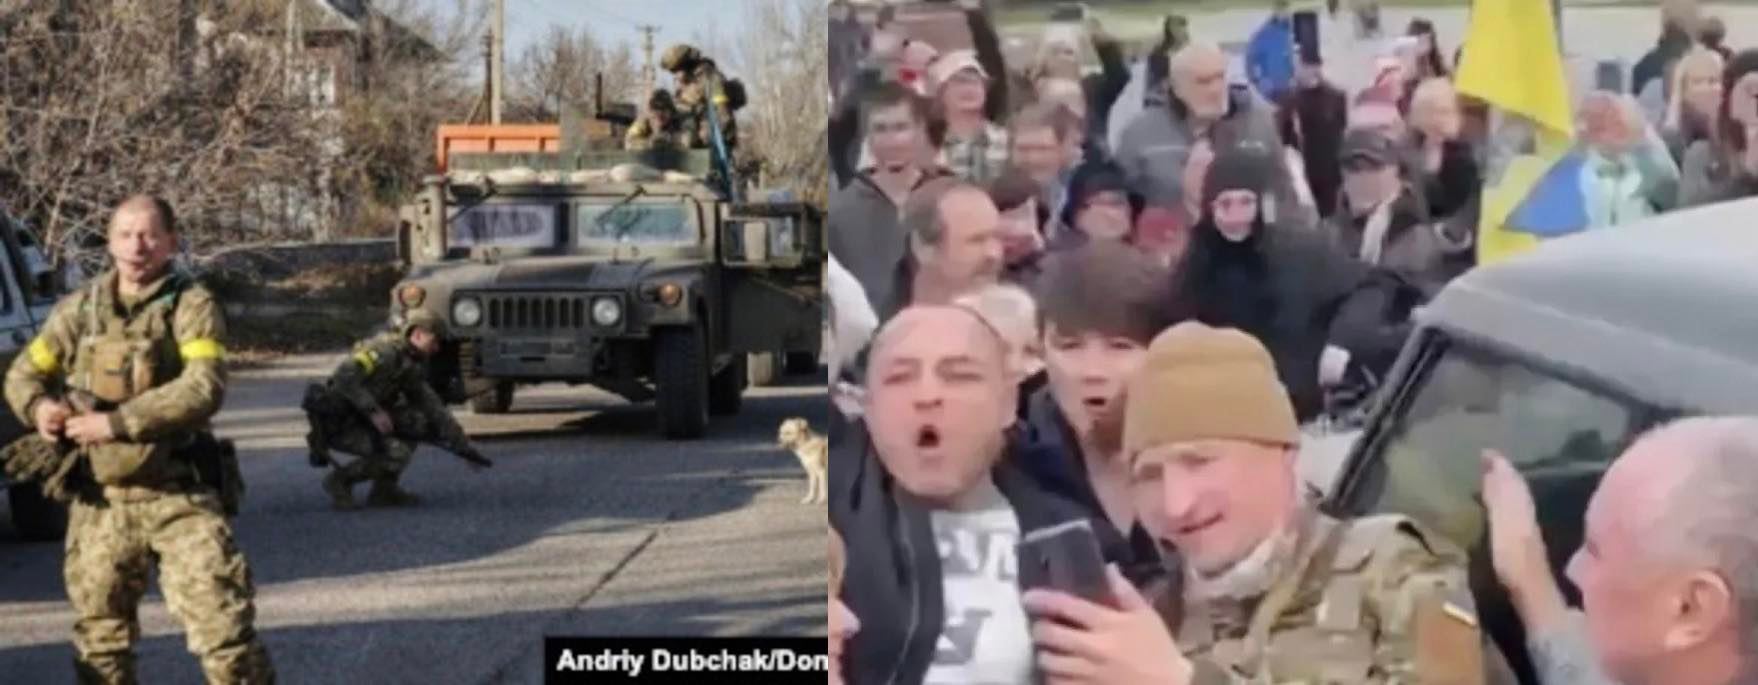 Цей день точно запам’ятає кожен!! 11.11 – українські військові вже у центрі Херсона –Люди скандуюmь ЗСУ!!! ЗСУ!!! емоційне відео